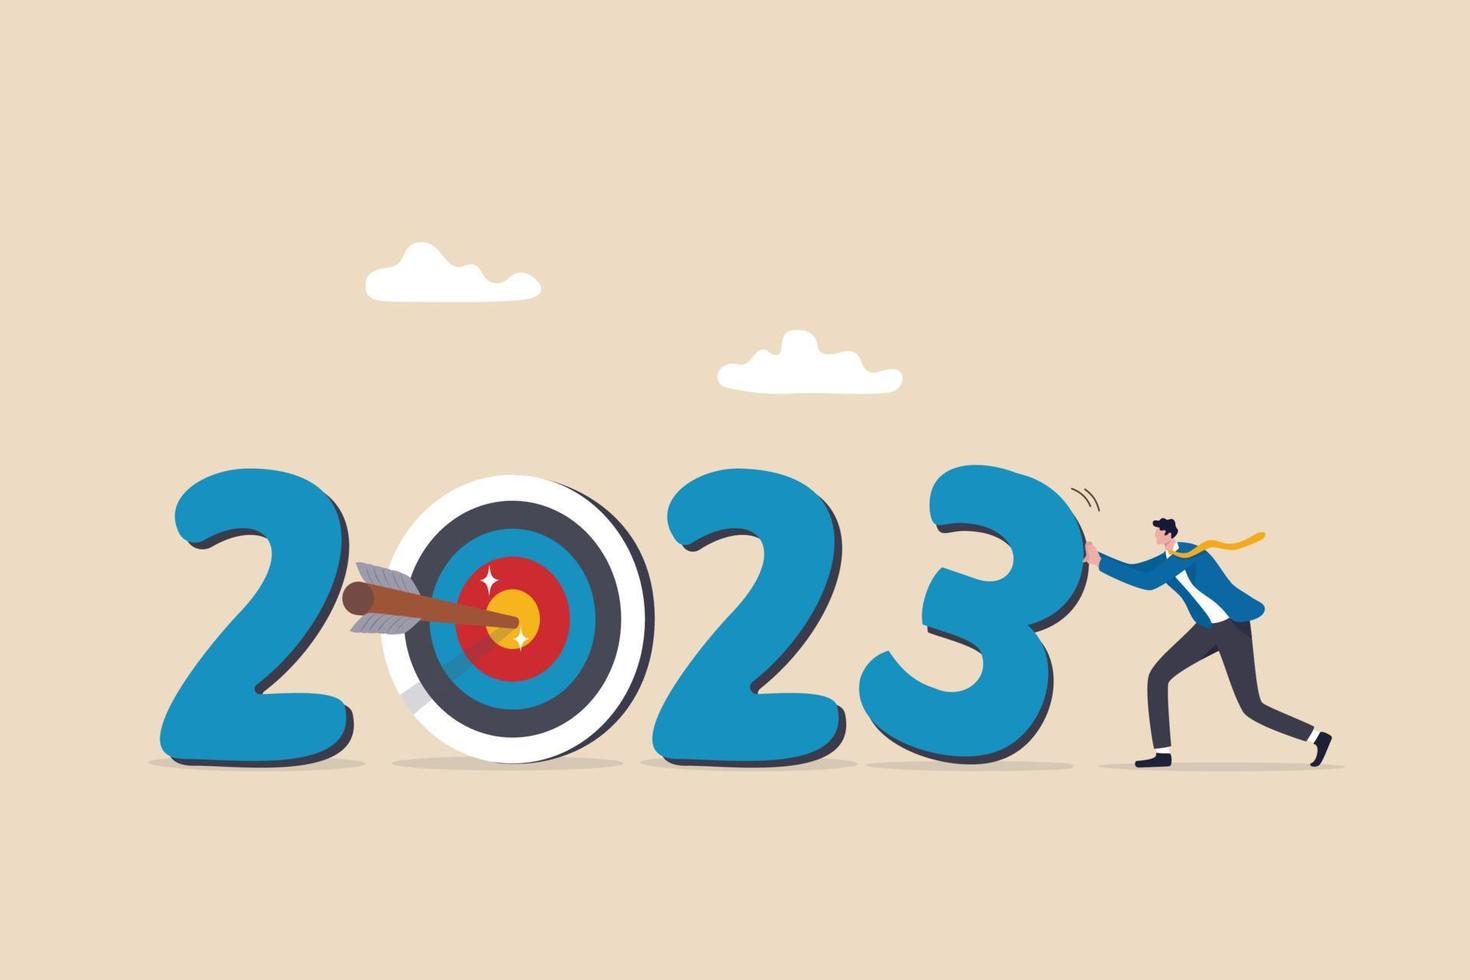 objectif commercial de l'année 2023, résolution du nouvel an ou défi pour atteindre l'objectif, viser le succès commercial, la croissance ou la motivation pour réussir le concept, homme d'affaires changeant d'année à l'objectif 2023. vecteur